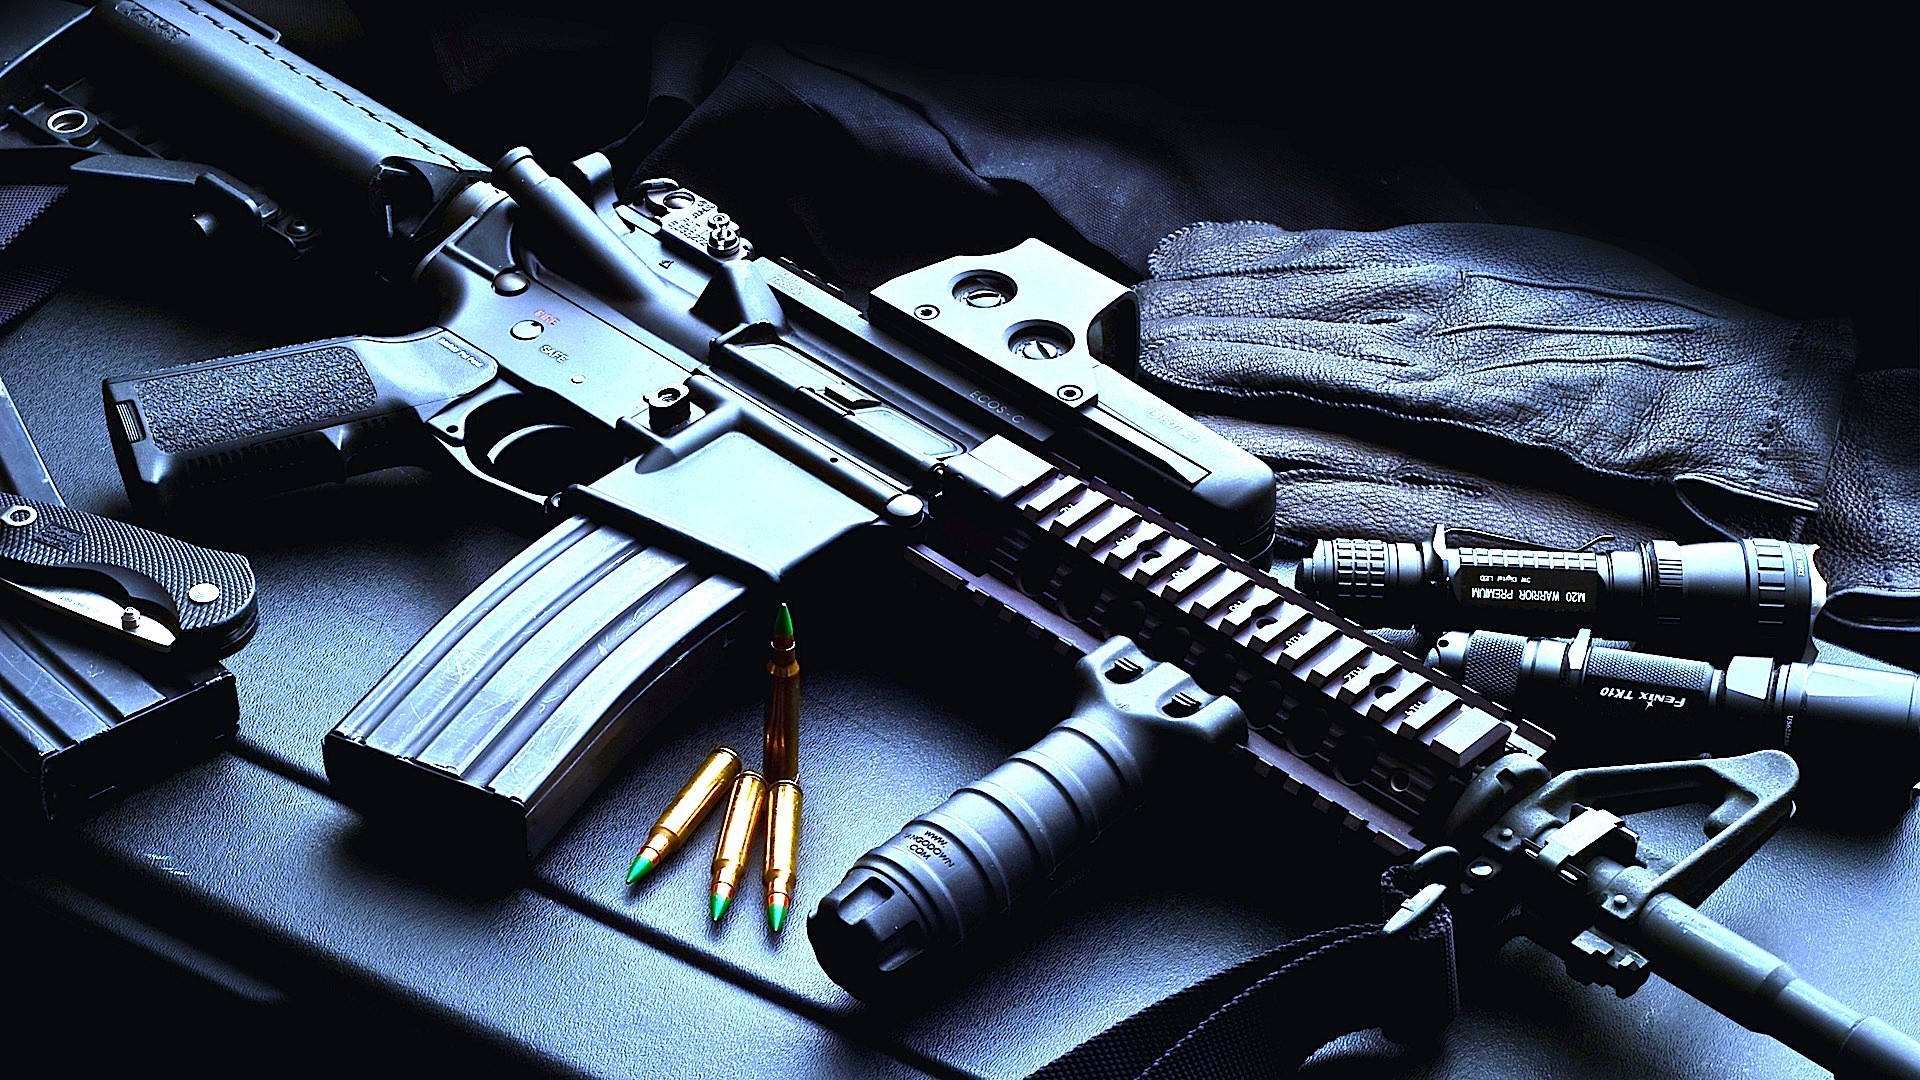 General 1920x1080 AR-15 gun weapon ammunition assault rifle American firearms